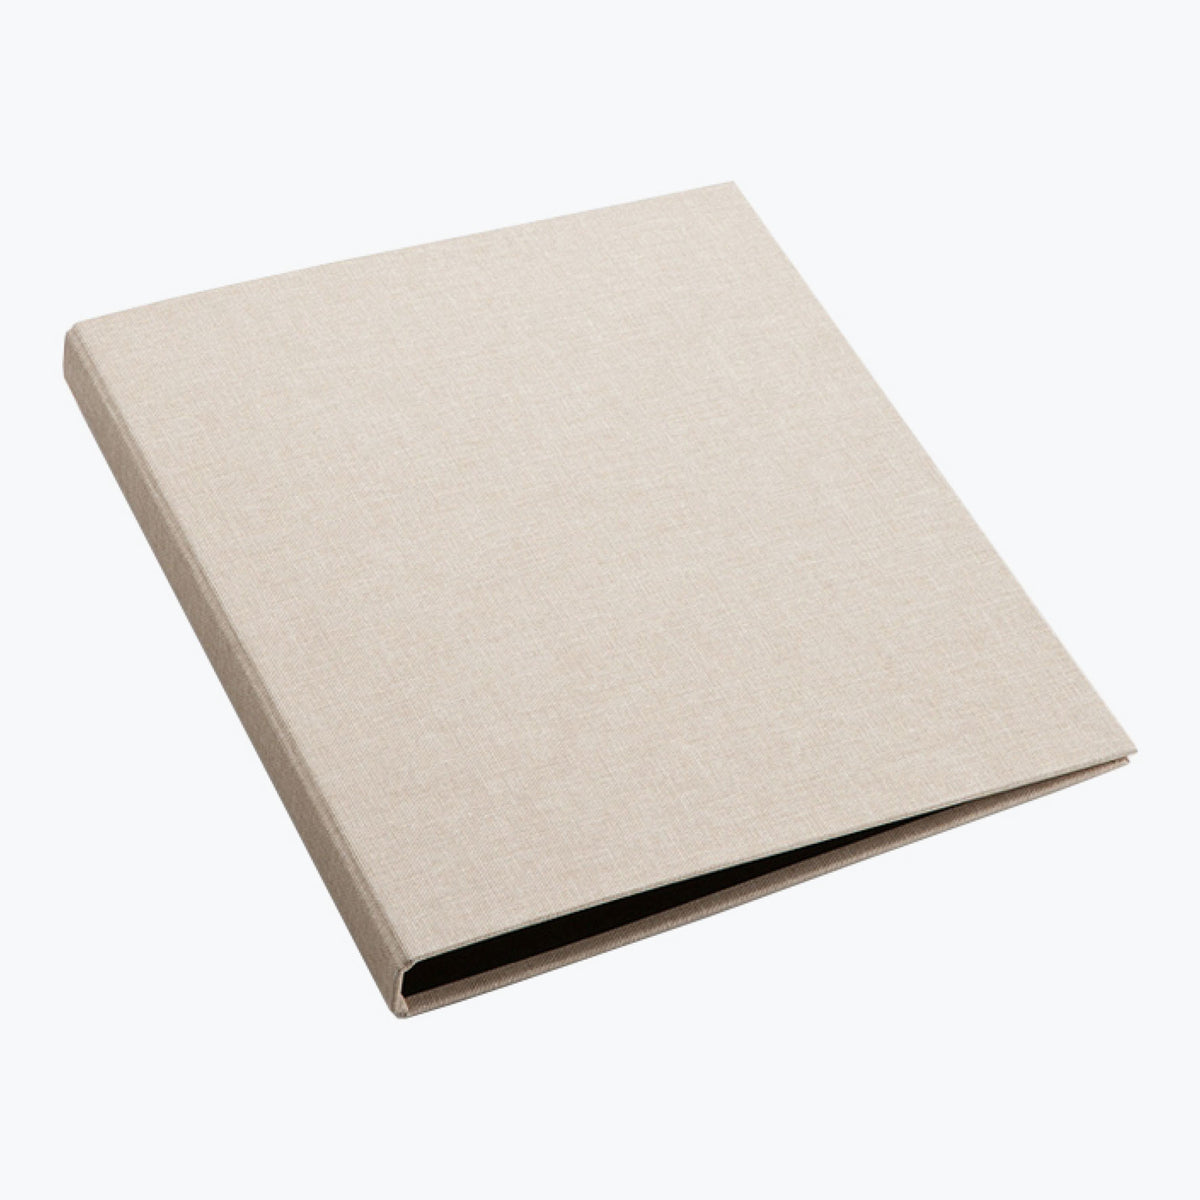 PVC File Folder A4/A5/A6/A7 Notebook Loose Leaf Ring Binder School Office  AU. | eBay